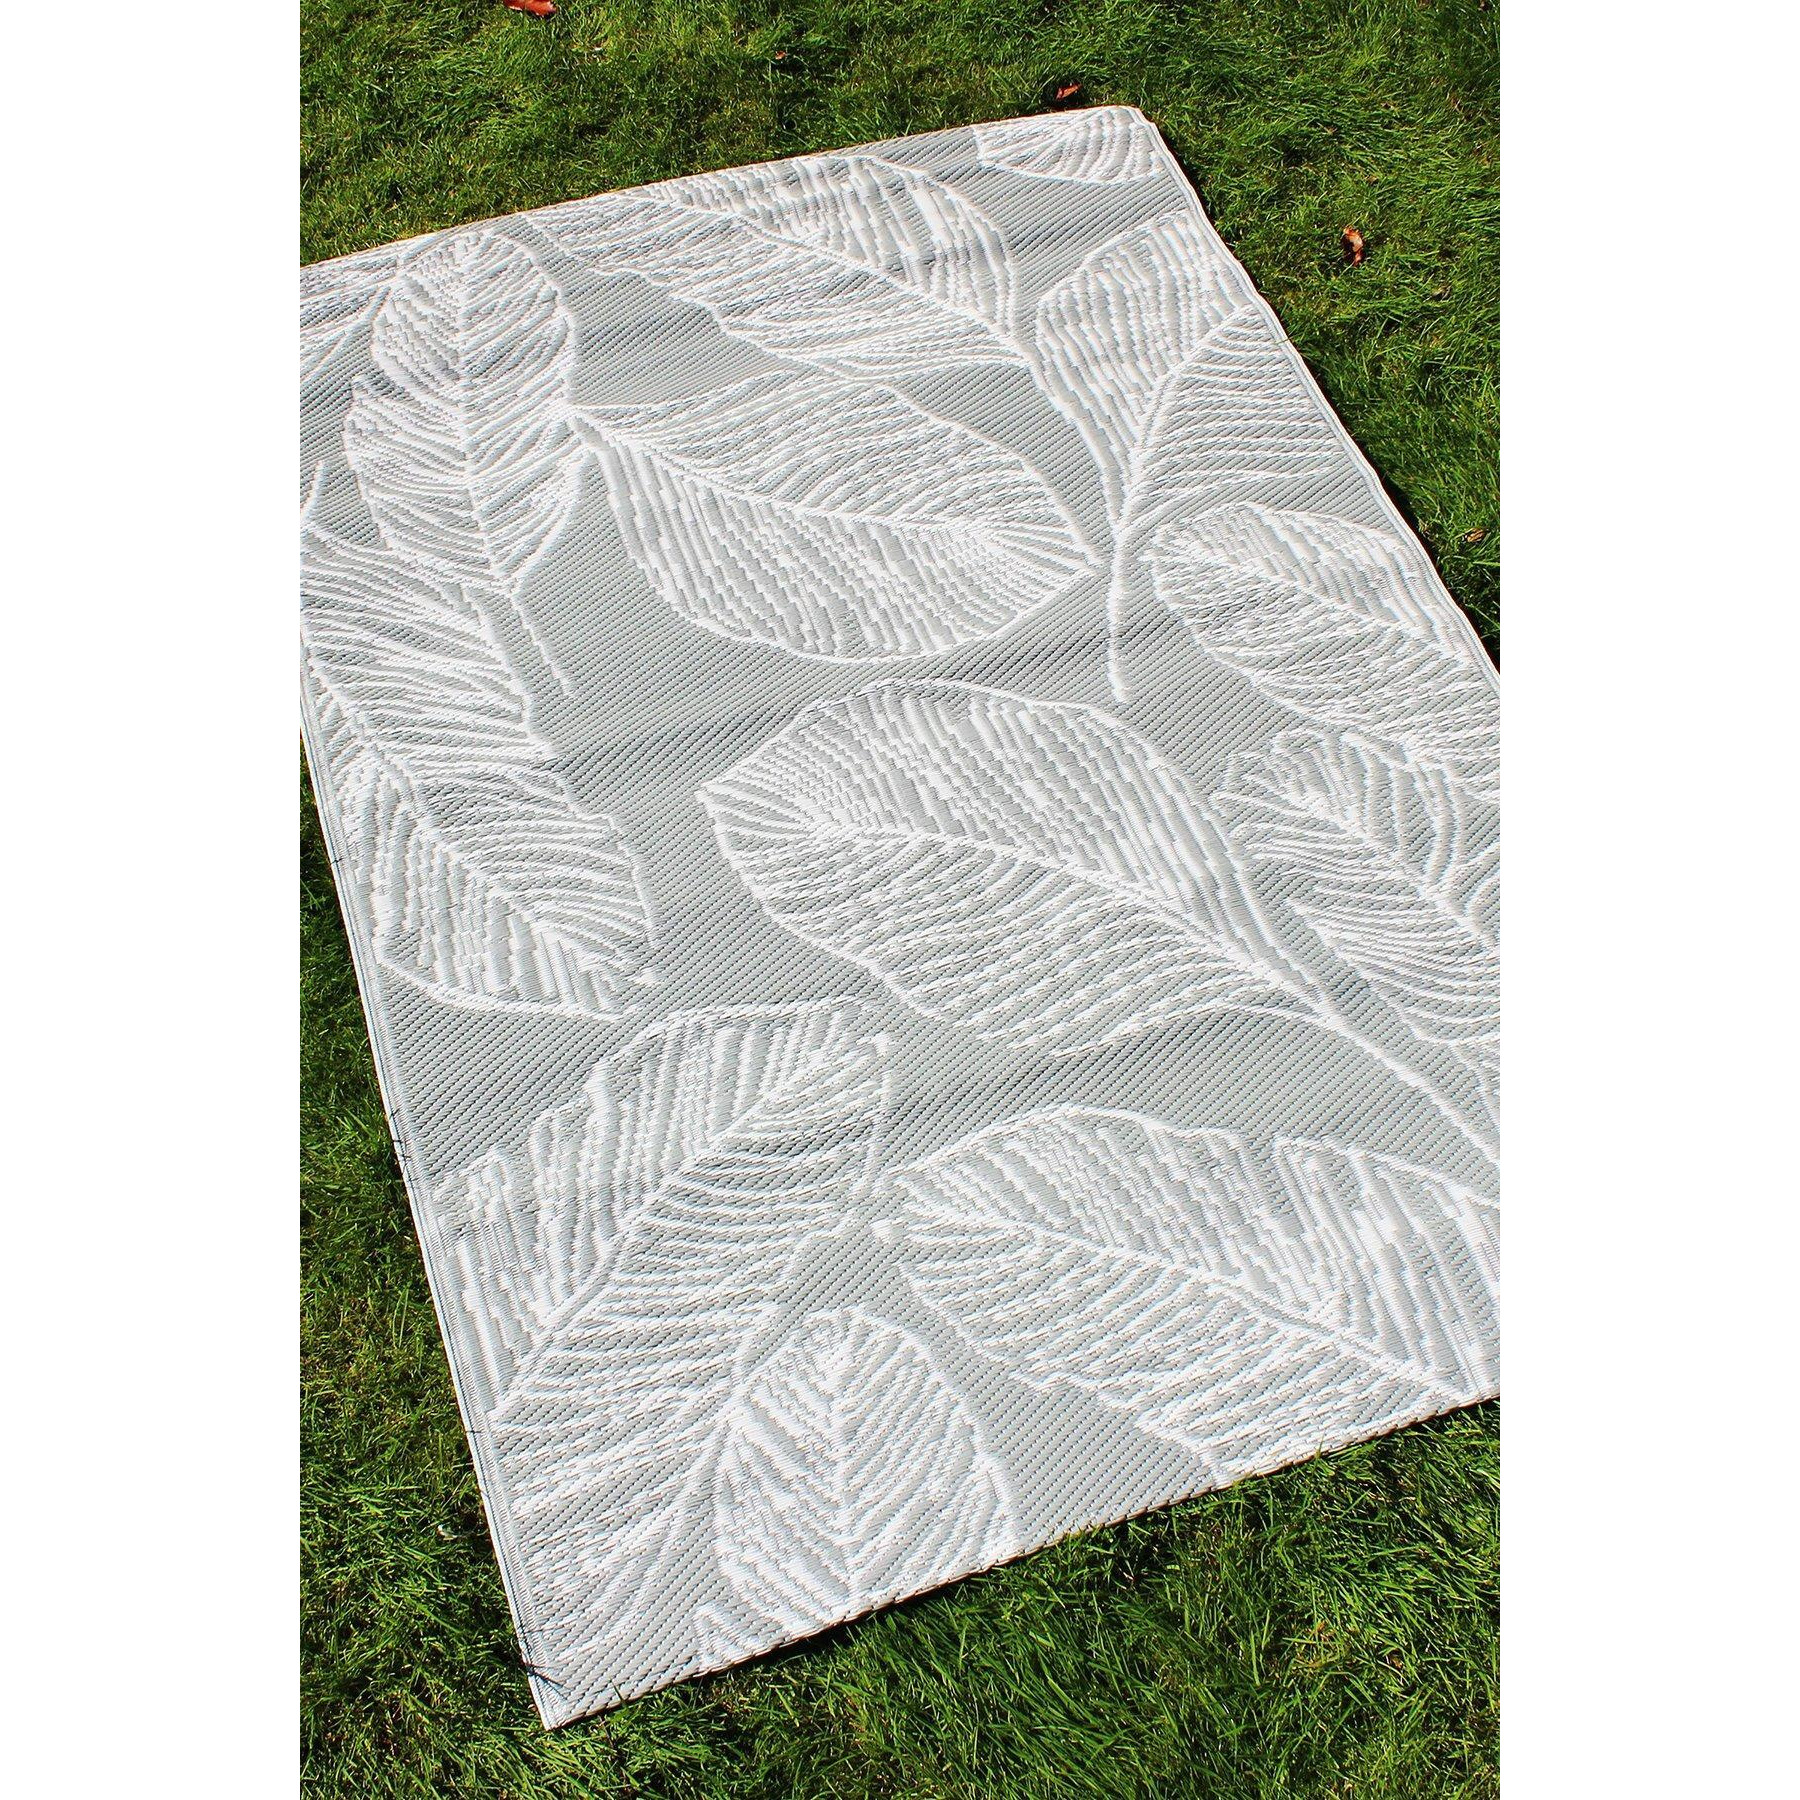 'Matteo' Leaf Print UV Resistant Outdoor Rug - image 1